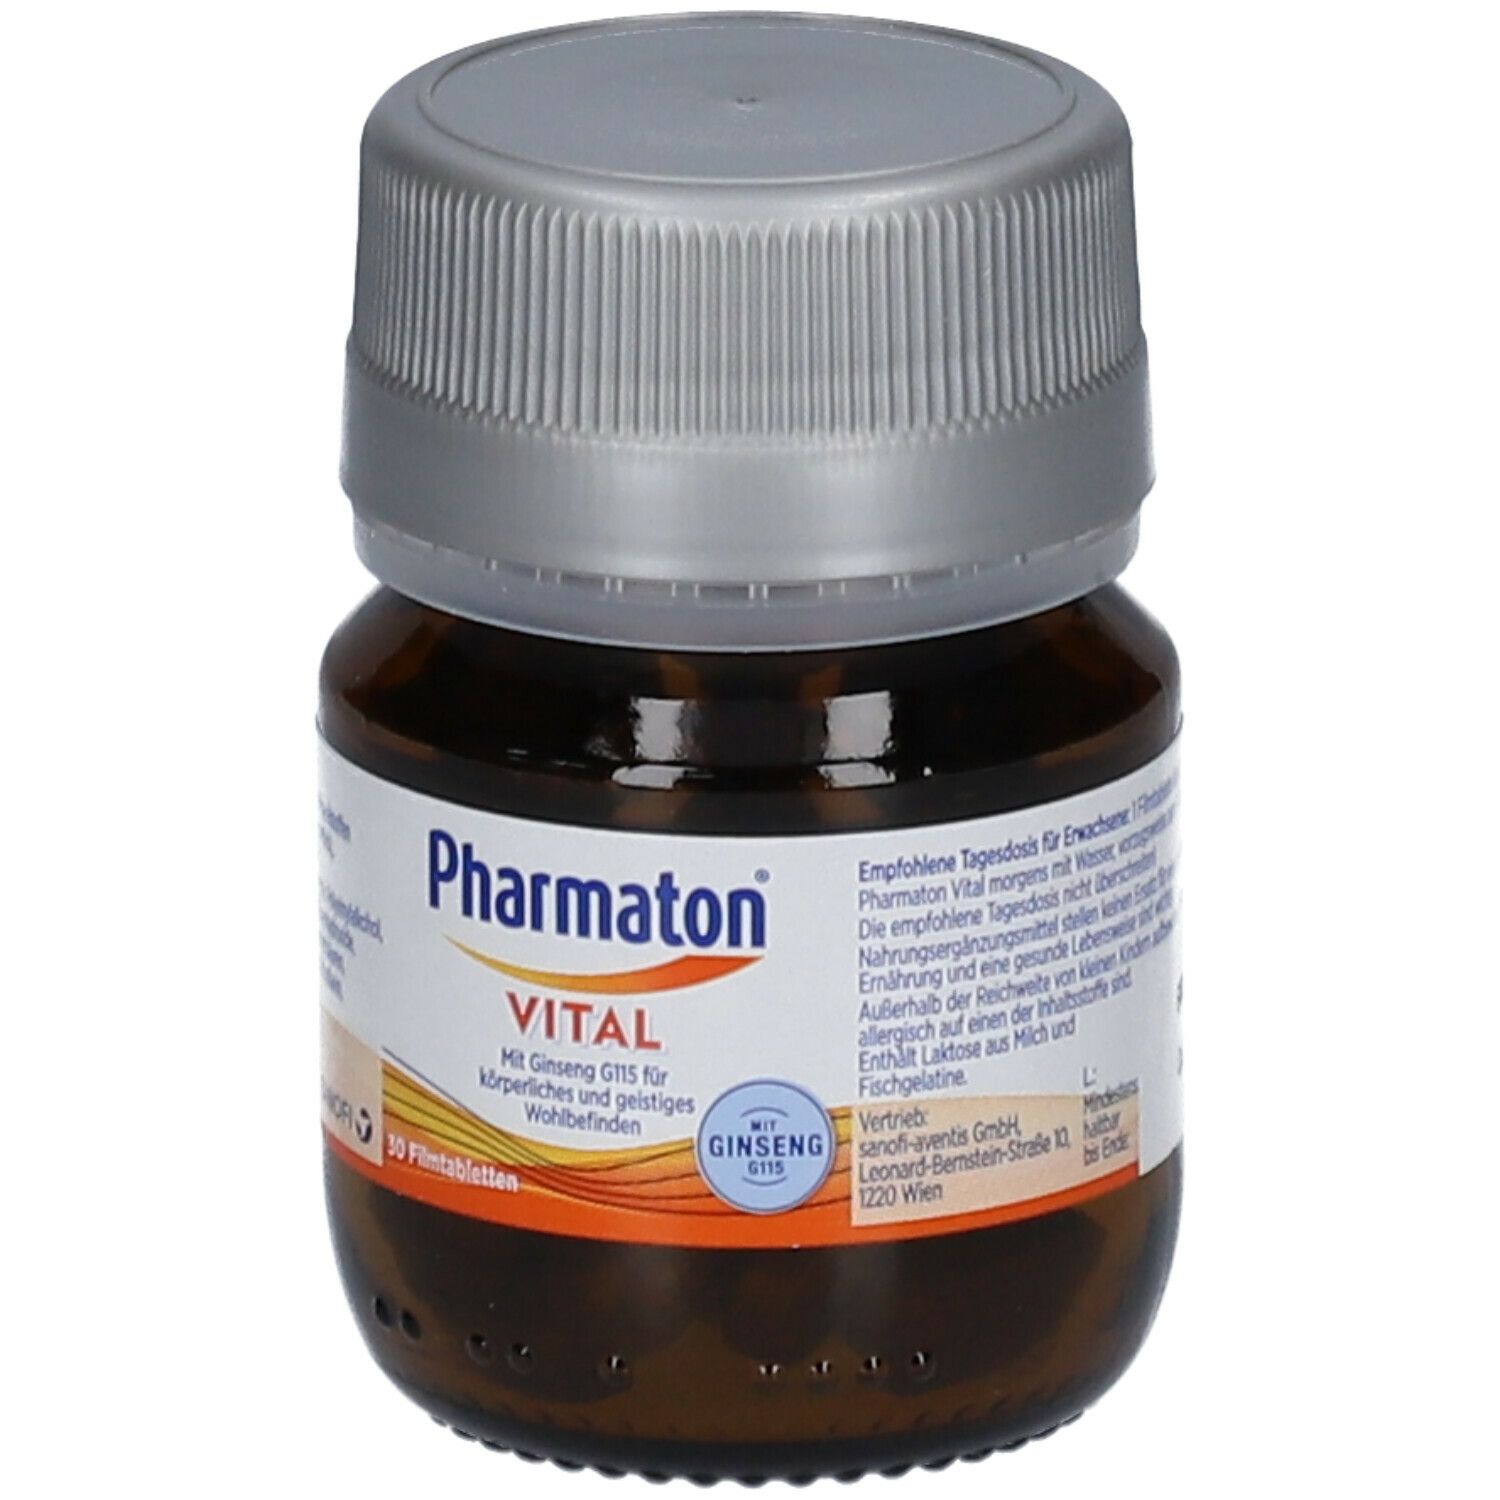 Pharmaton® Vital mit Vitaminen und Mineralstoffen zur Stärkung der Immunabwehr